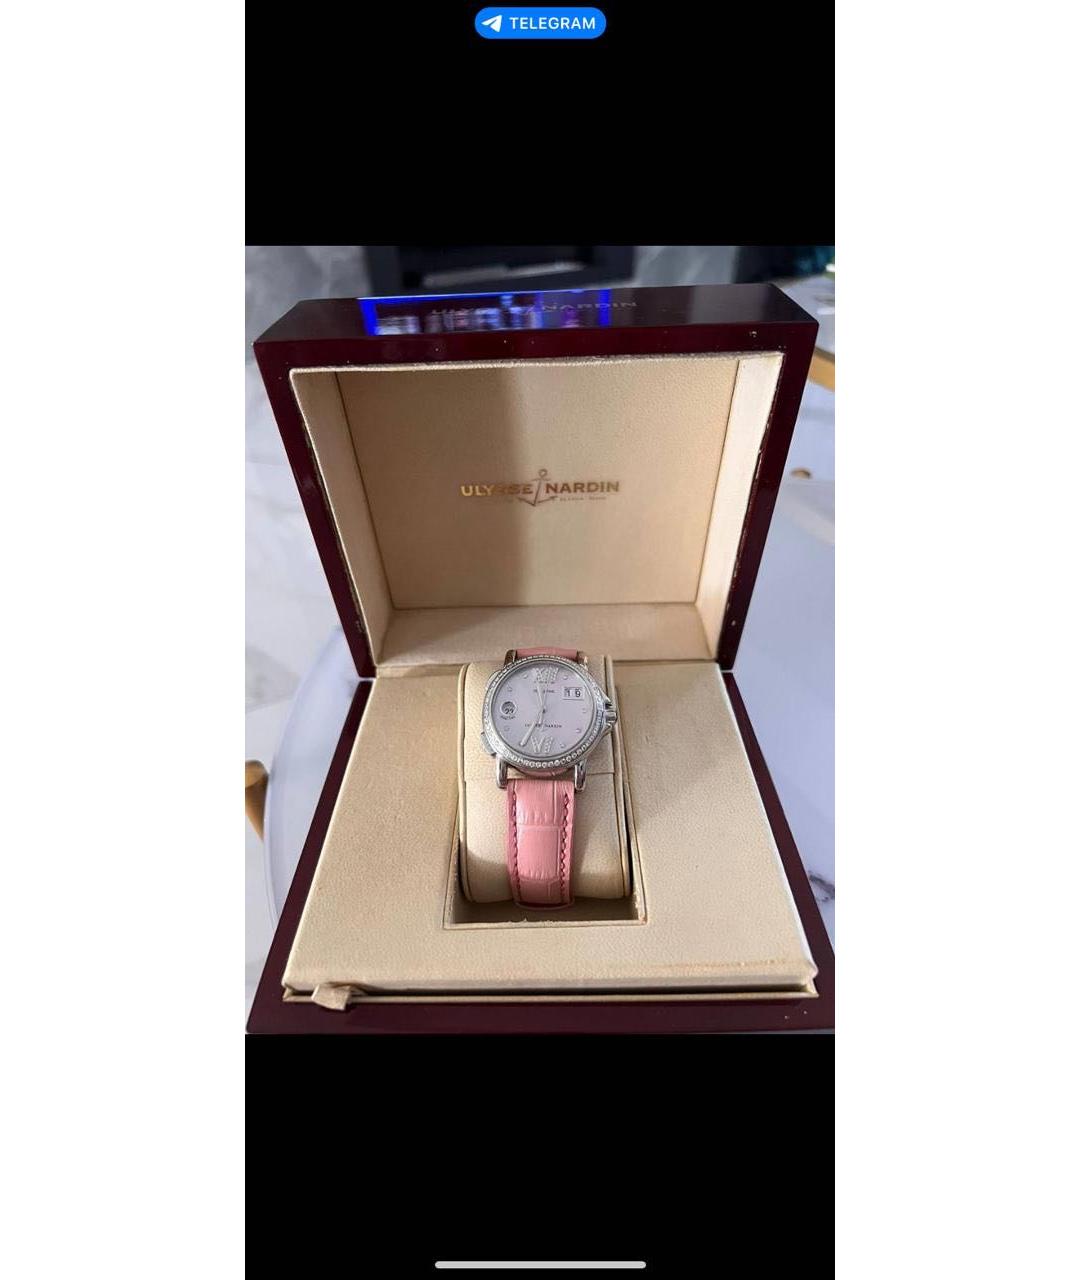 Ulysse Nardin Розовые металлические часы, фото 5